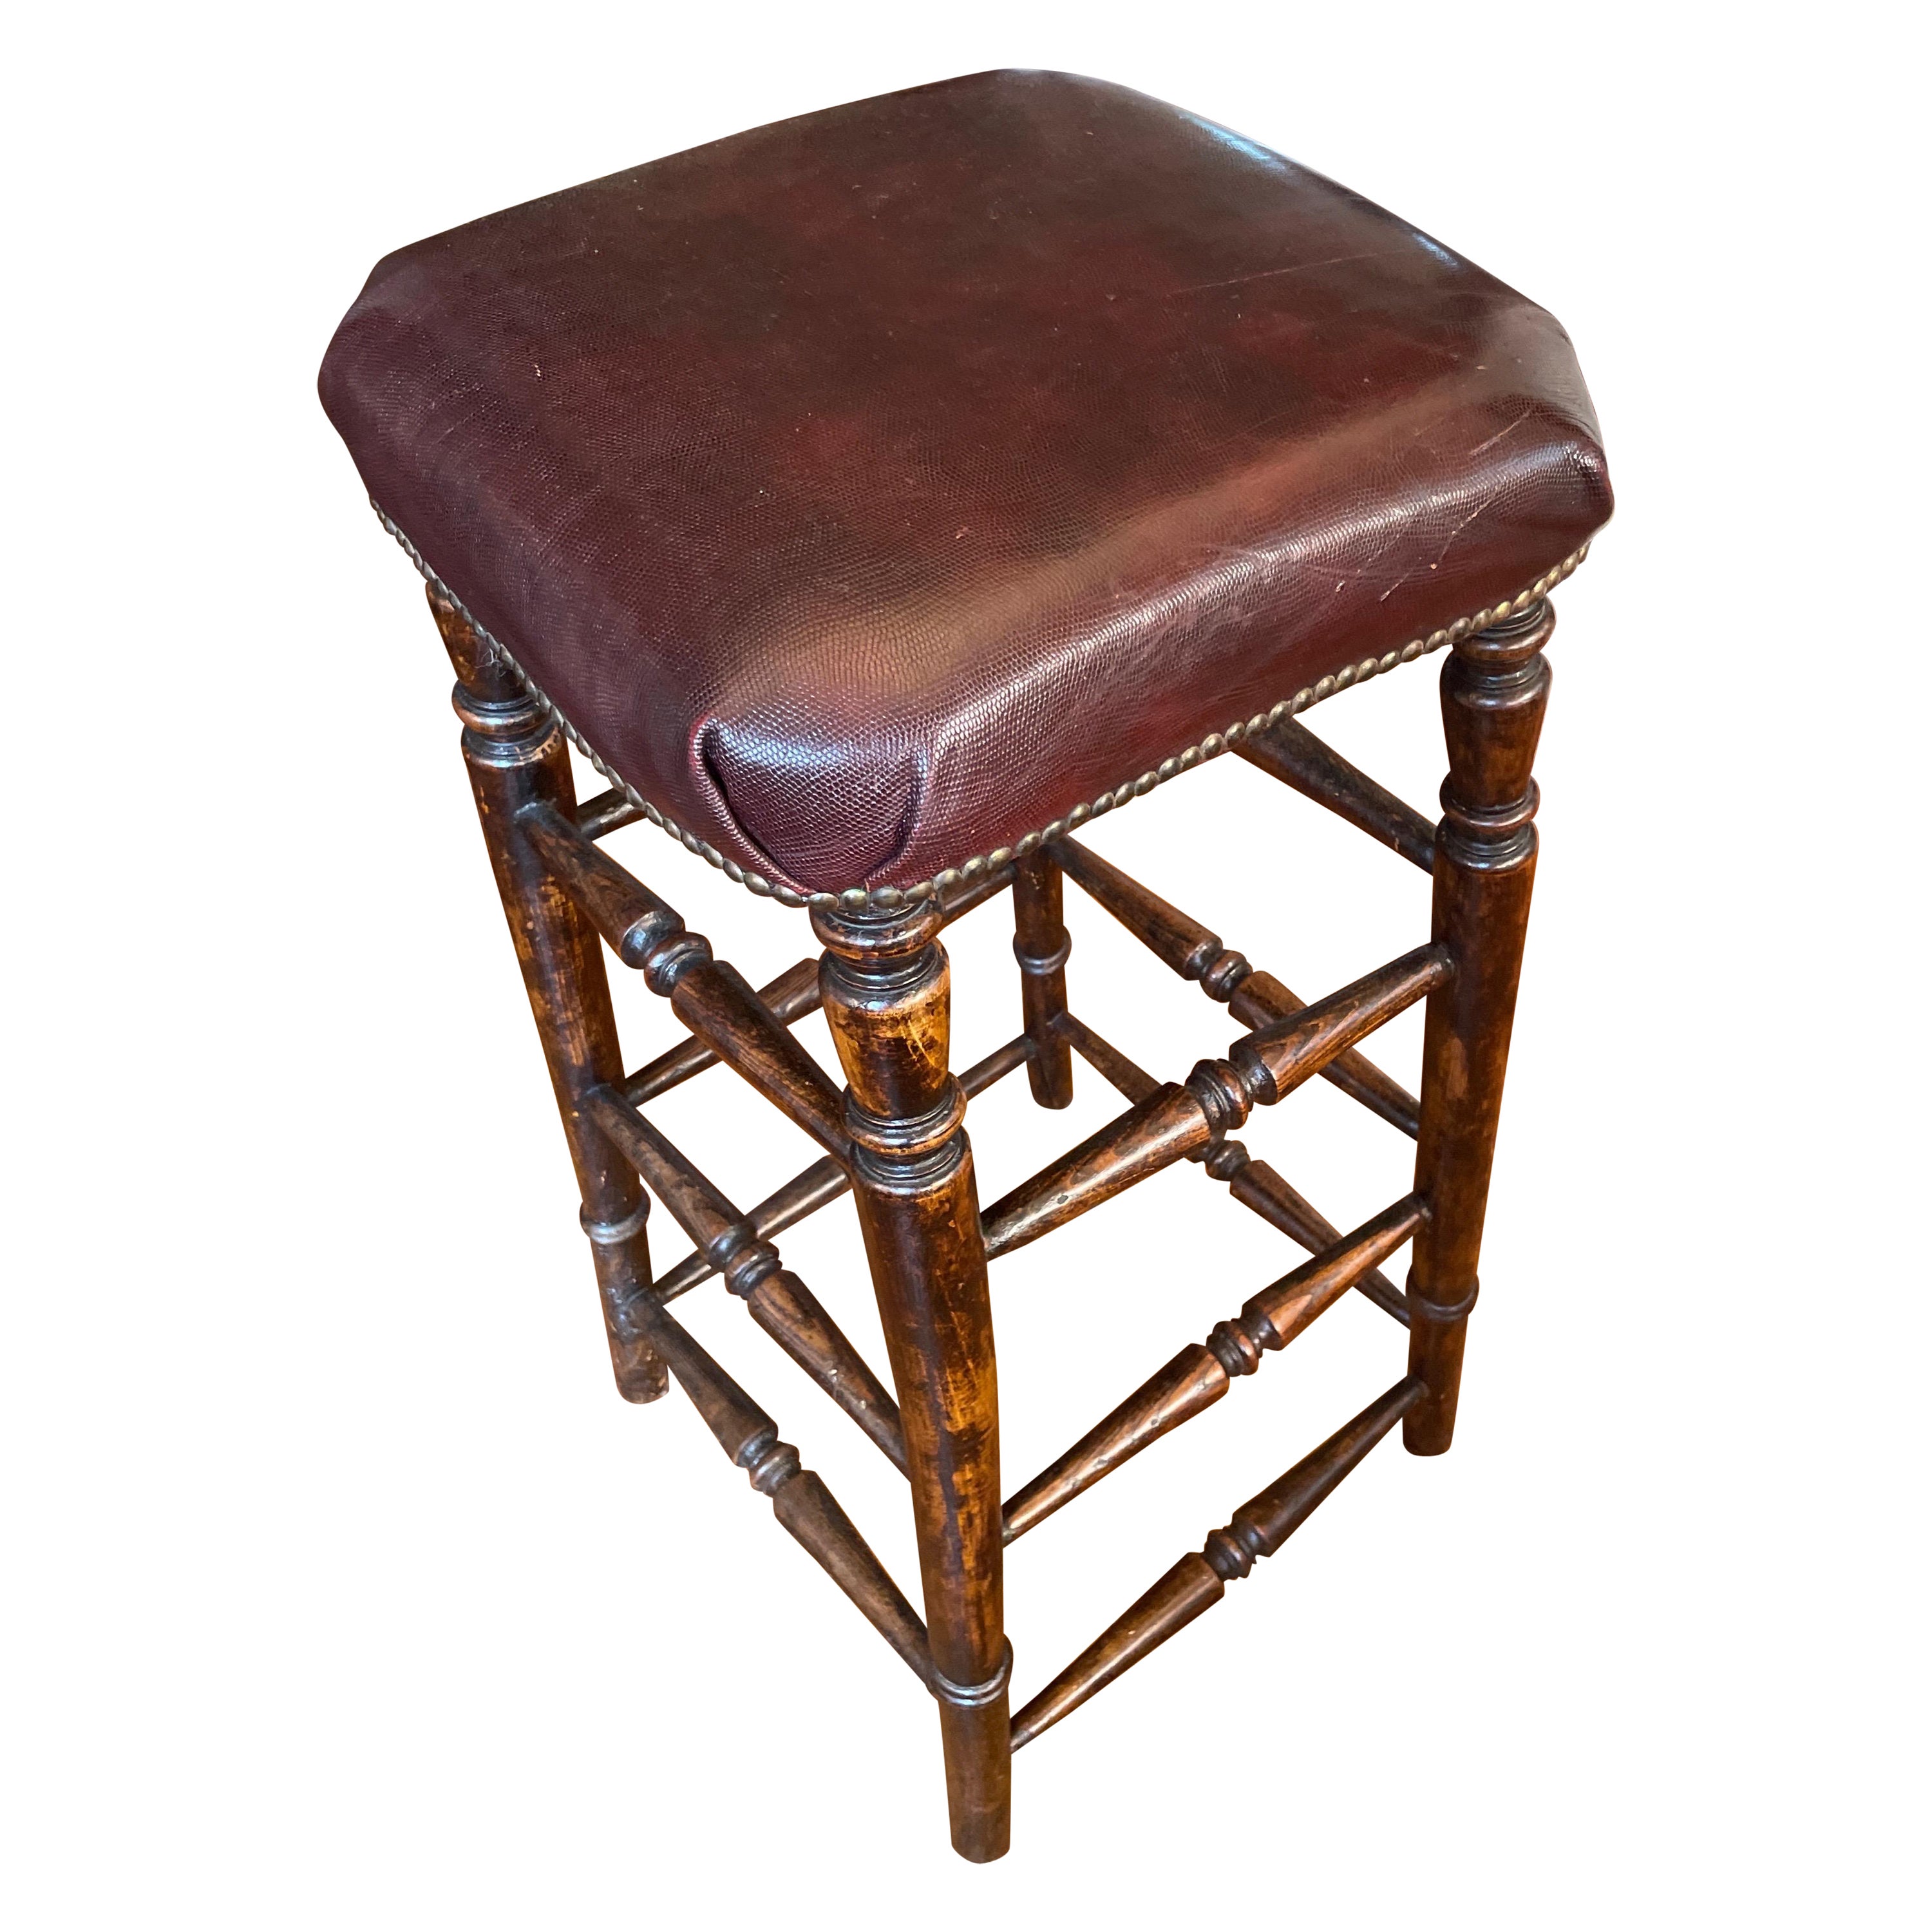 Mid 19th Century turned legged stool